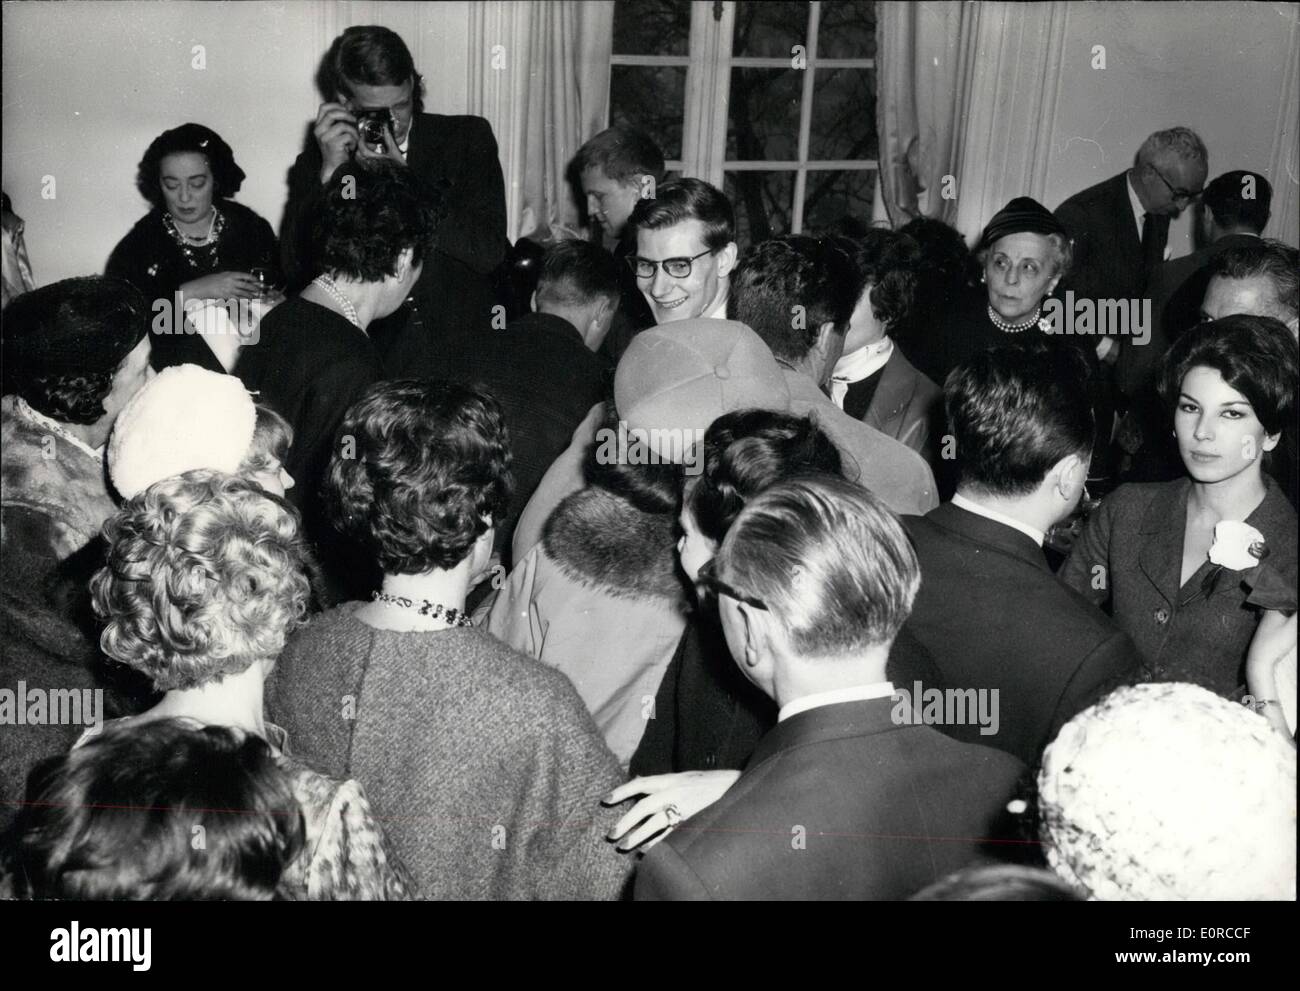 Enero 01, 1959 - Las aberturas de la moda de París: Yves Saint-Laurent presentó su nueva colección en Dior esta mañana. Al igual que los anteriores, esta colección fue muy exitoso. La foto muestra Yves Saint-Laurent entrevistado por un reportero de Radio. Foto de stock